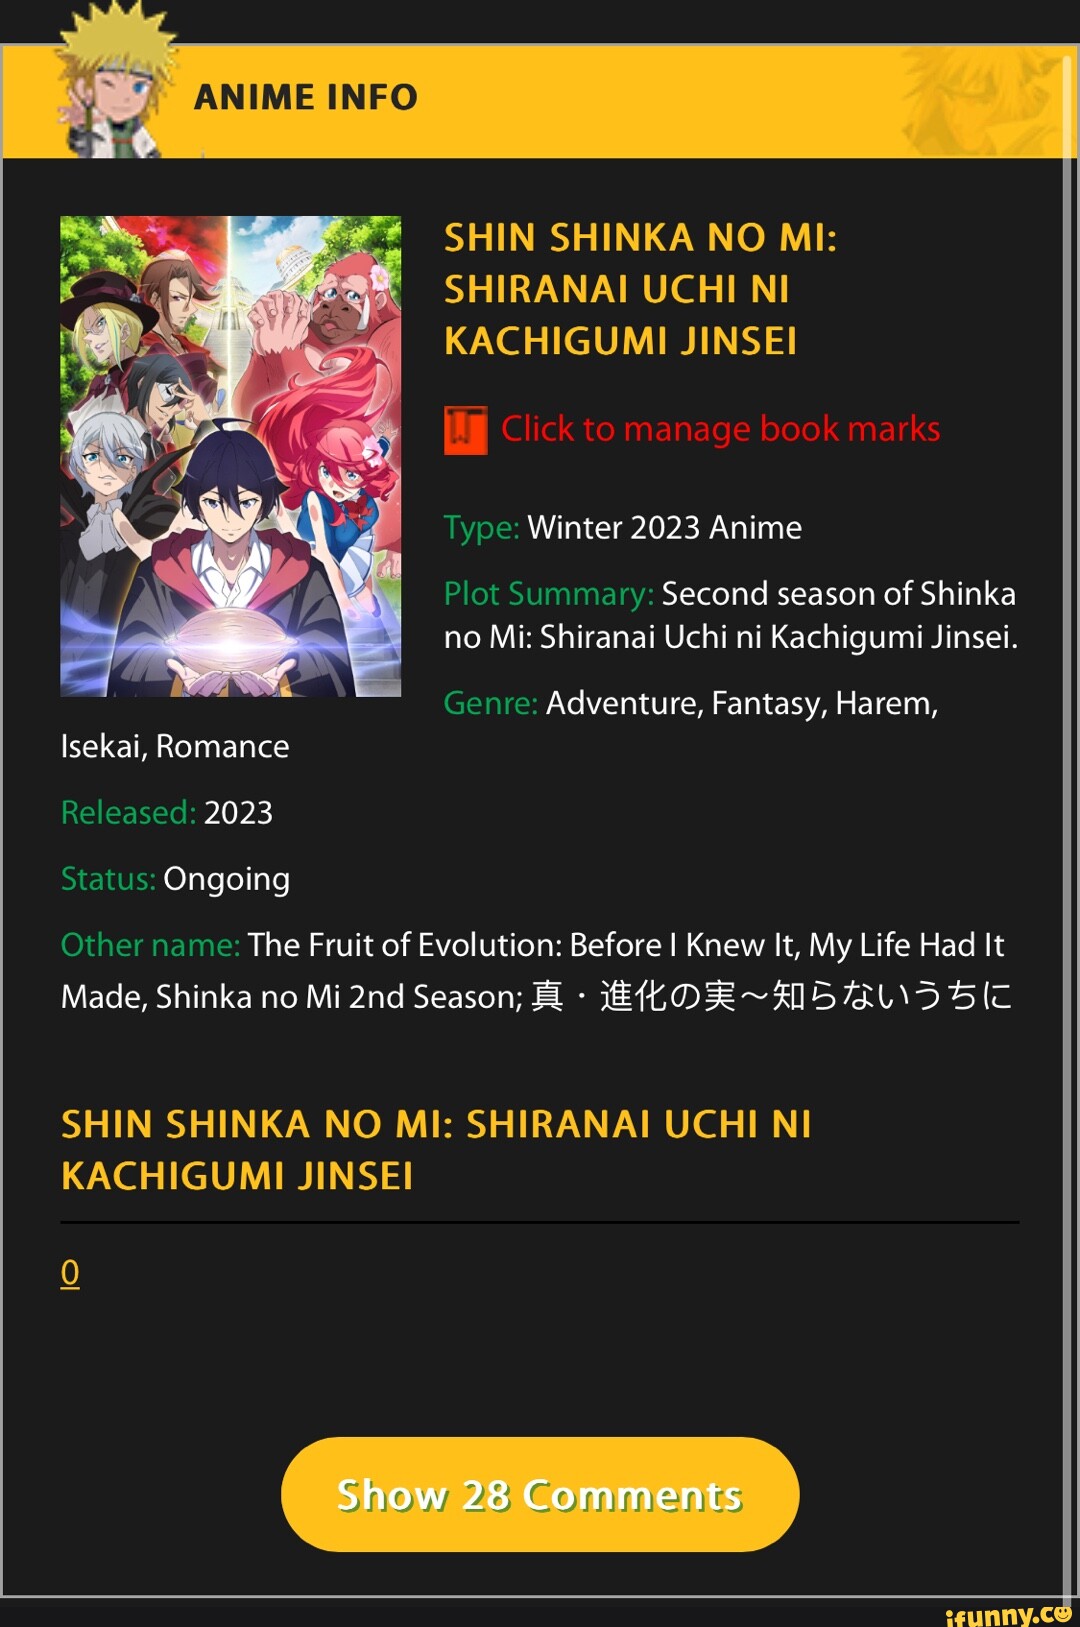 Shin Shinka no Mi: Shiranai Uchi ni Kachigumi Jinsei - Pictures 